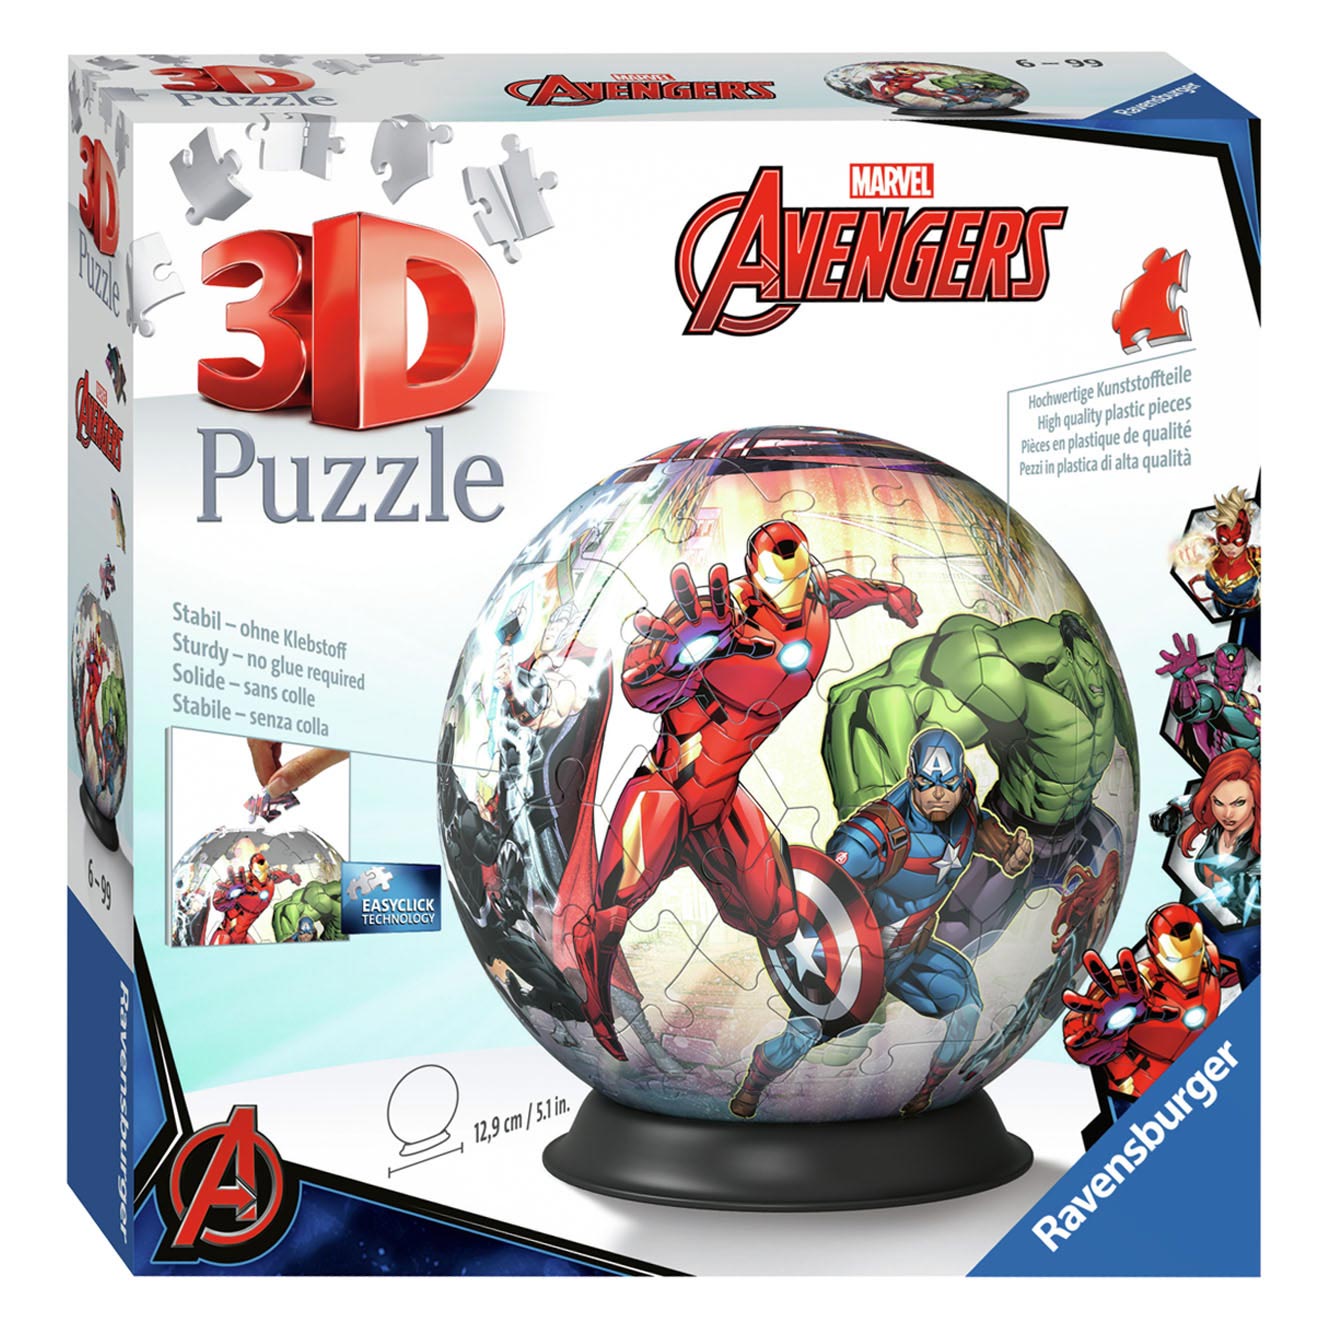 Casse-tête 3D Marvel Avengers , 72 pièces.